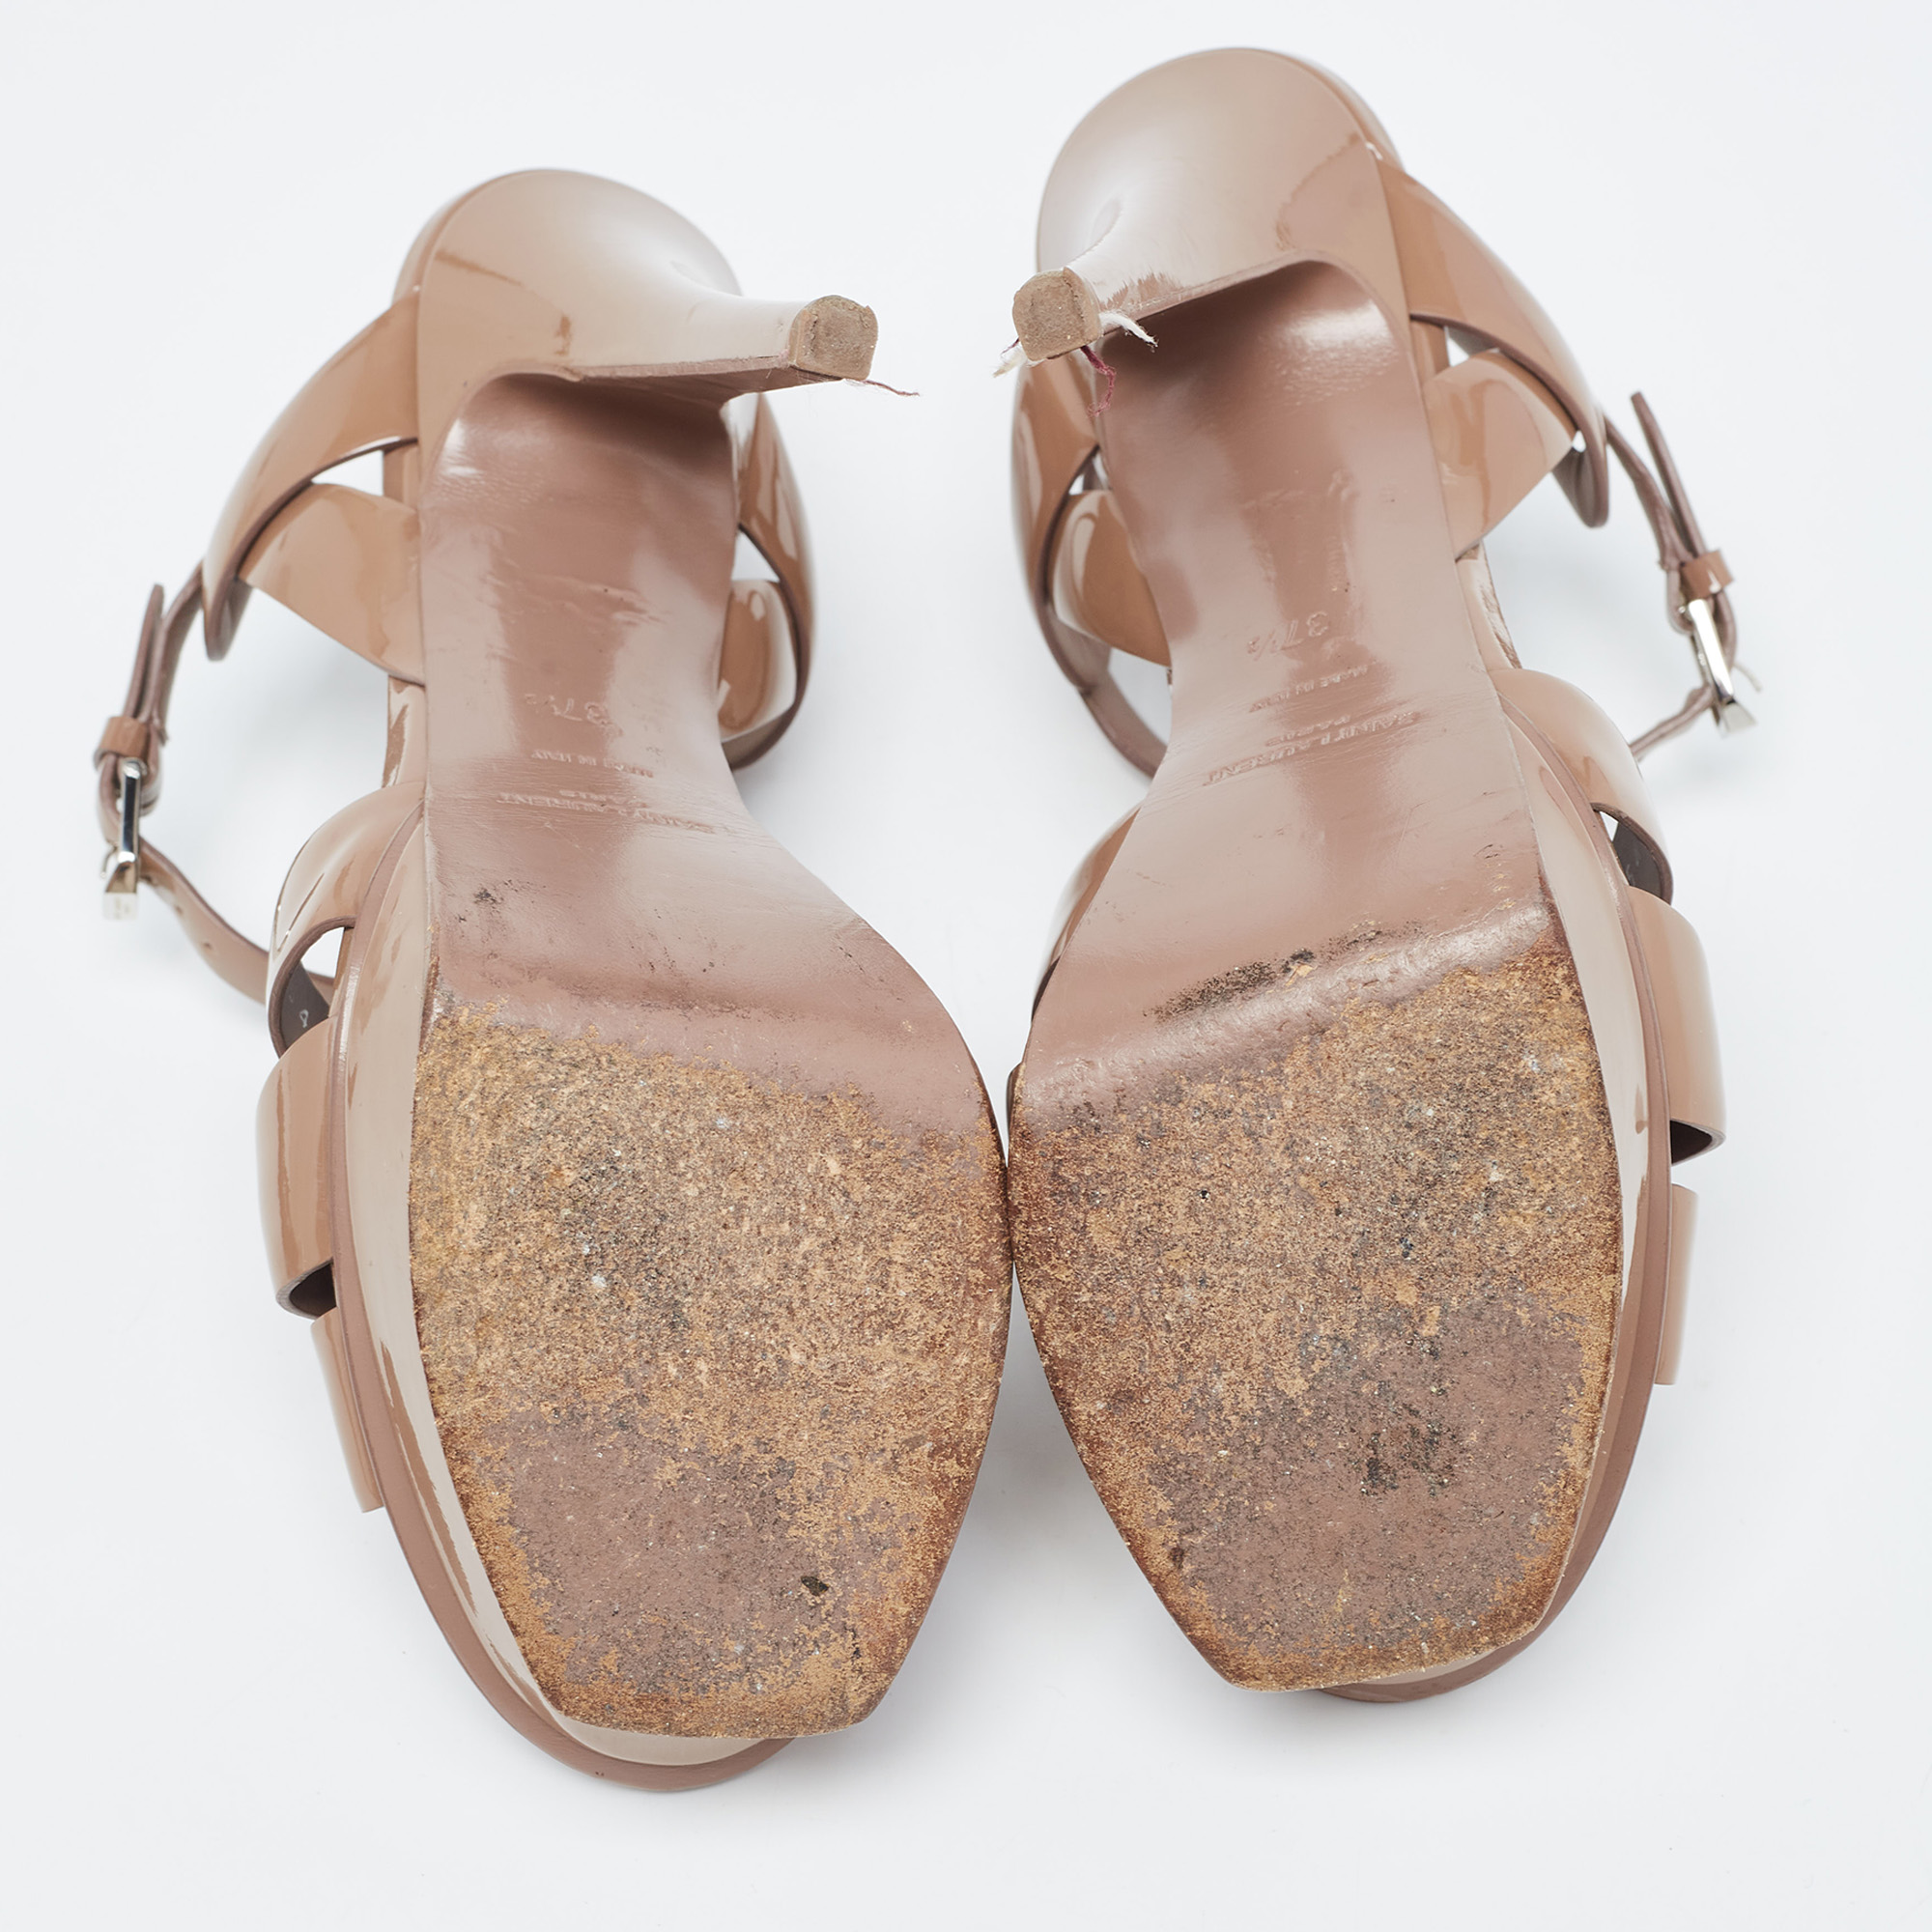 Saint Laurent Light Brown Patent Leather Tribute Sandals Size 37.5